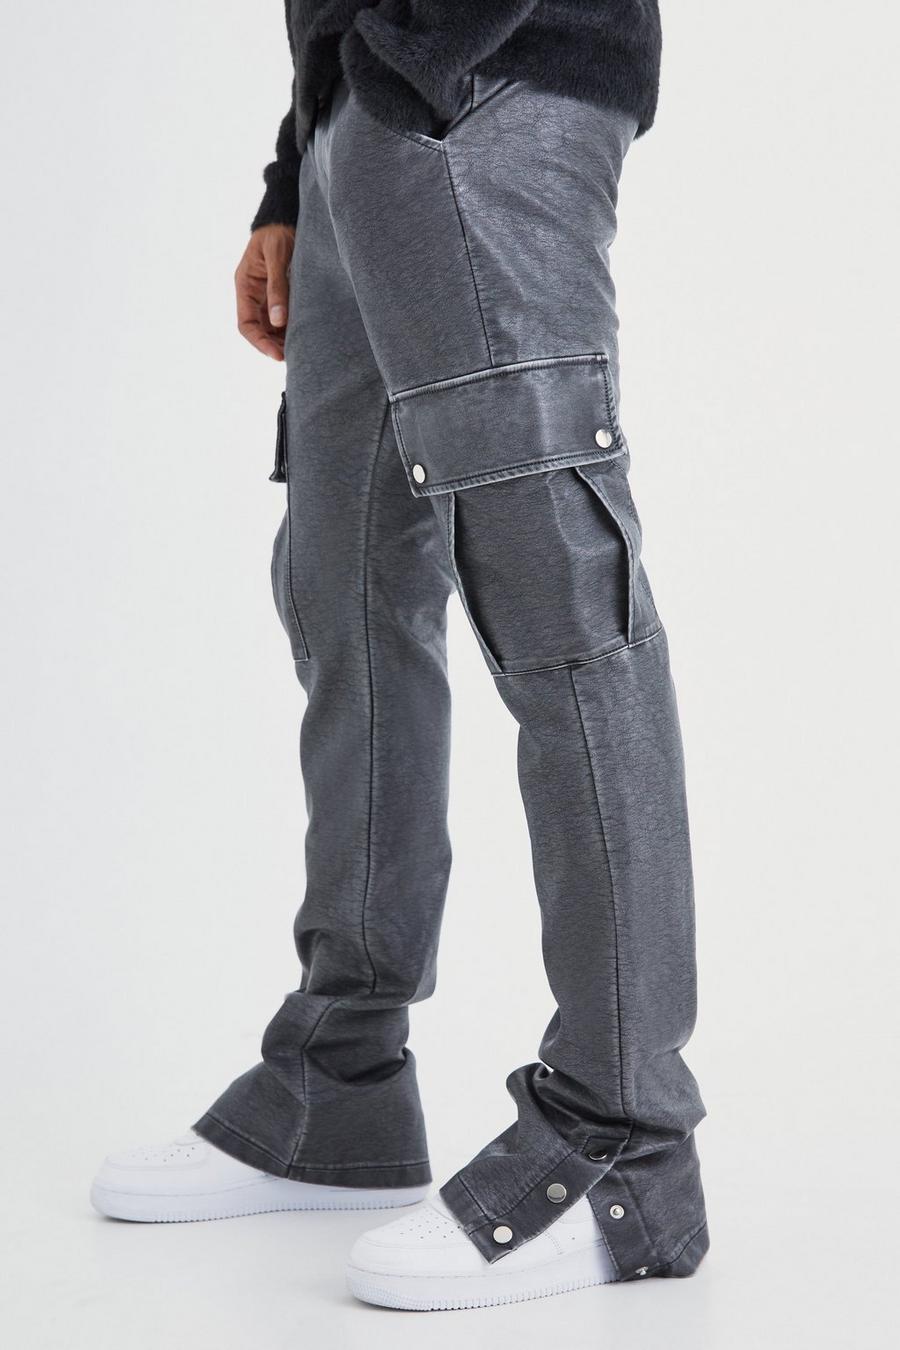 Pantaloni Cargo Slim Fit in PU slavato con bottoni a pressione sul fondo, Charcoal